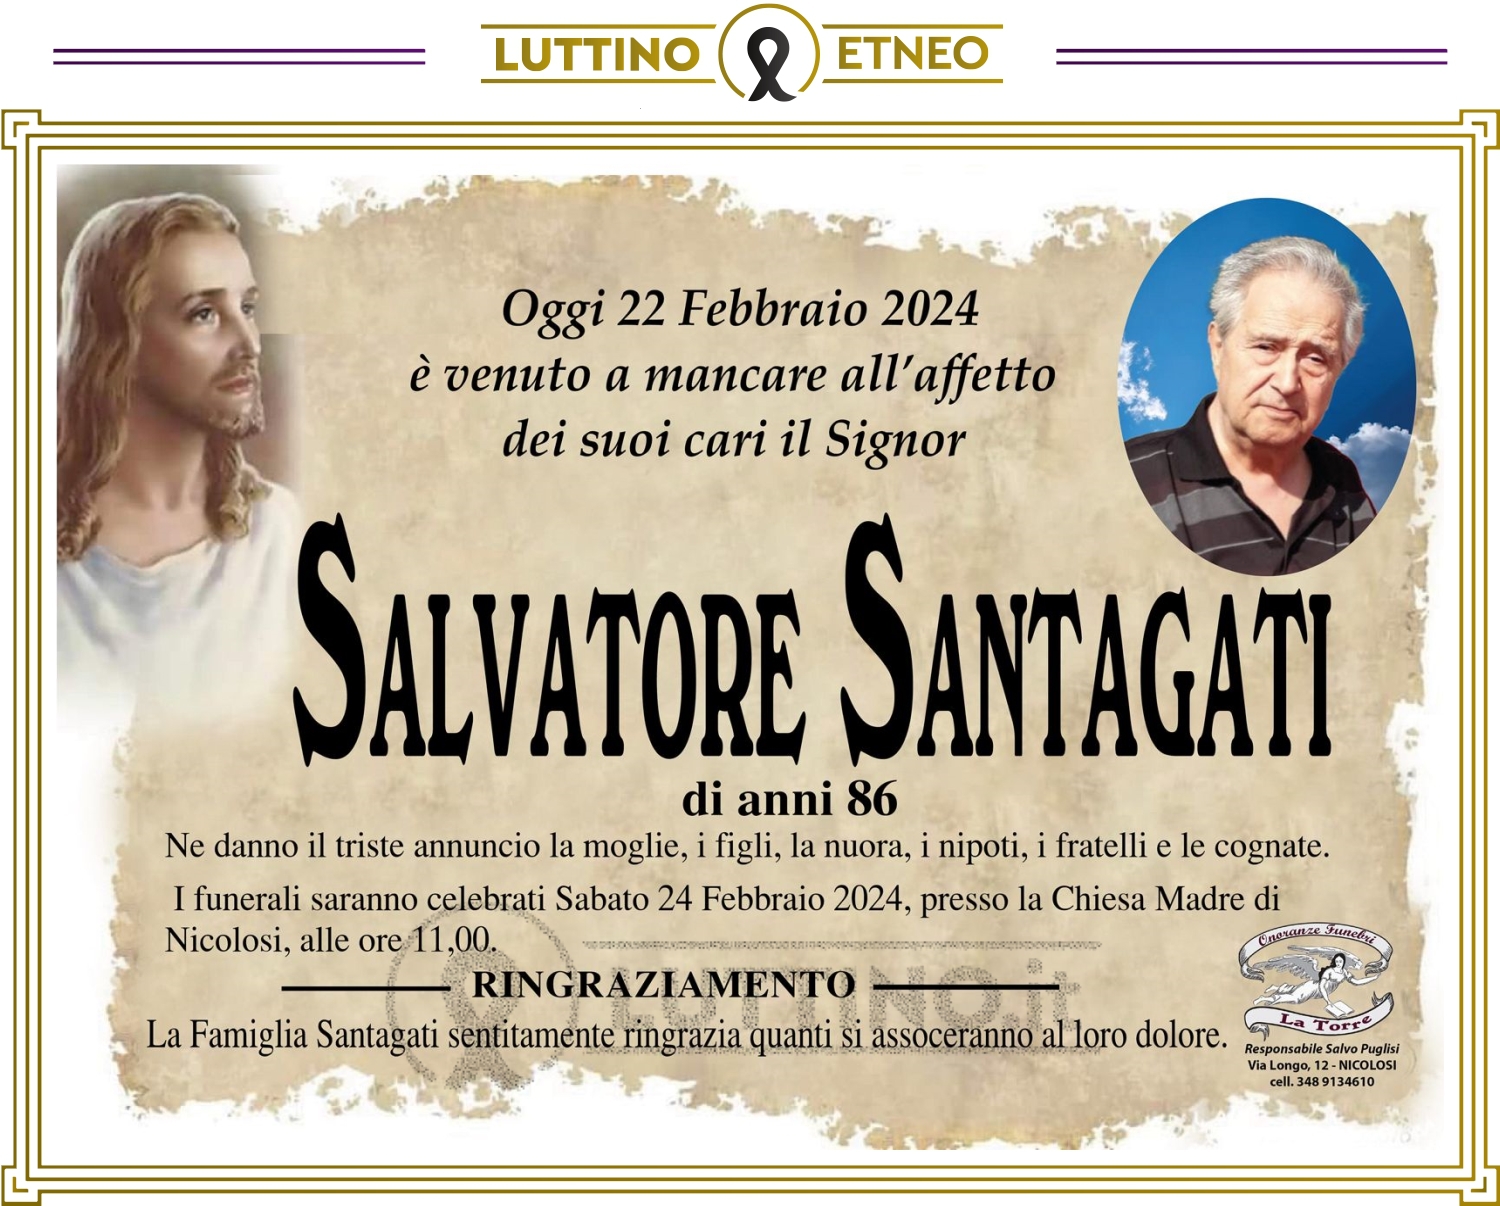 Salvatore Santagati